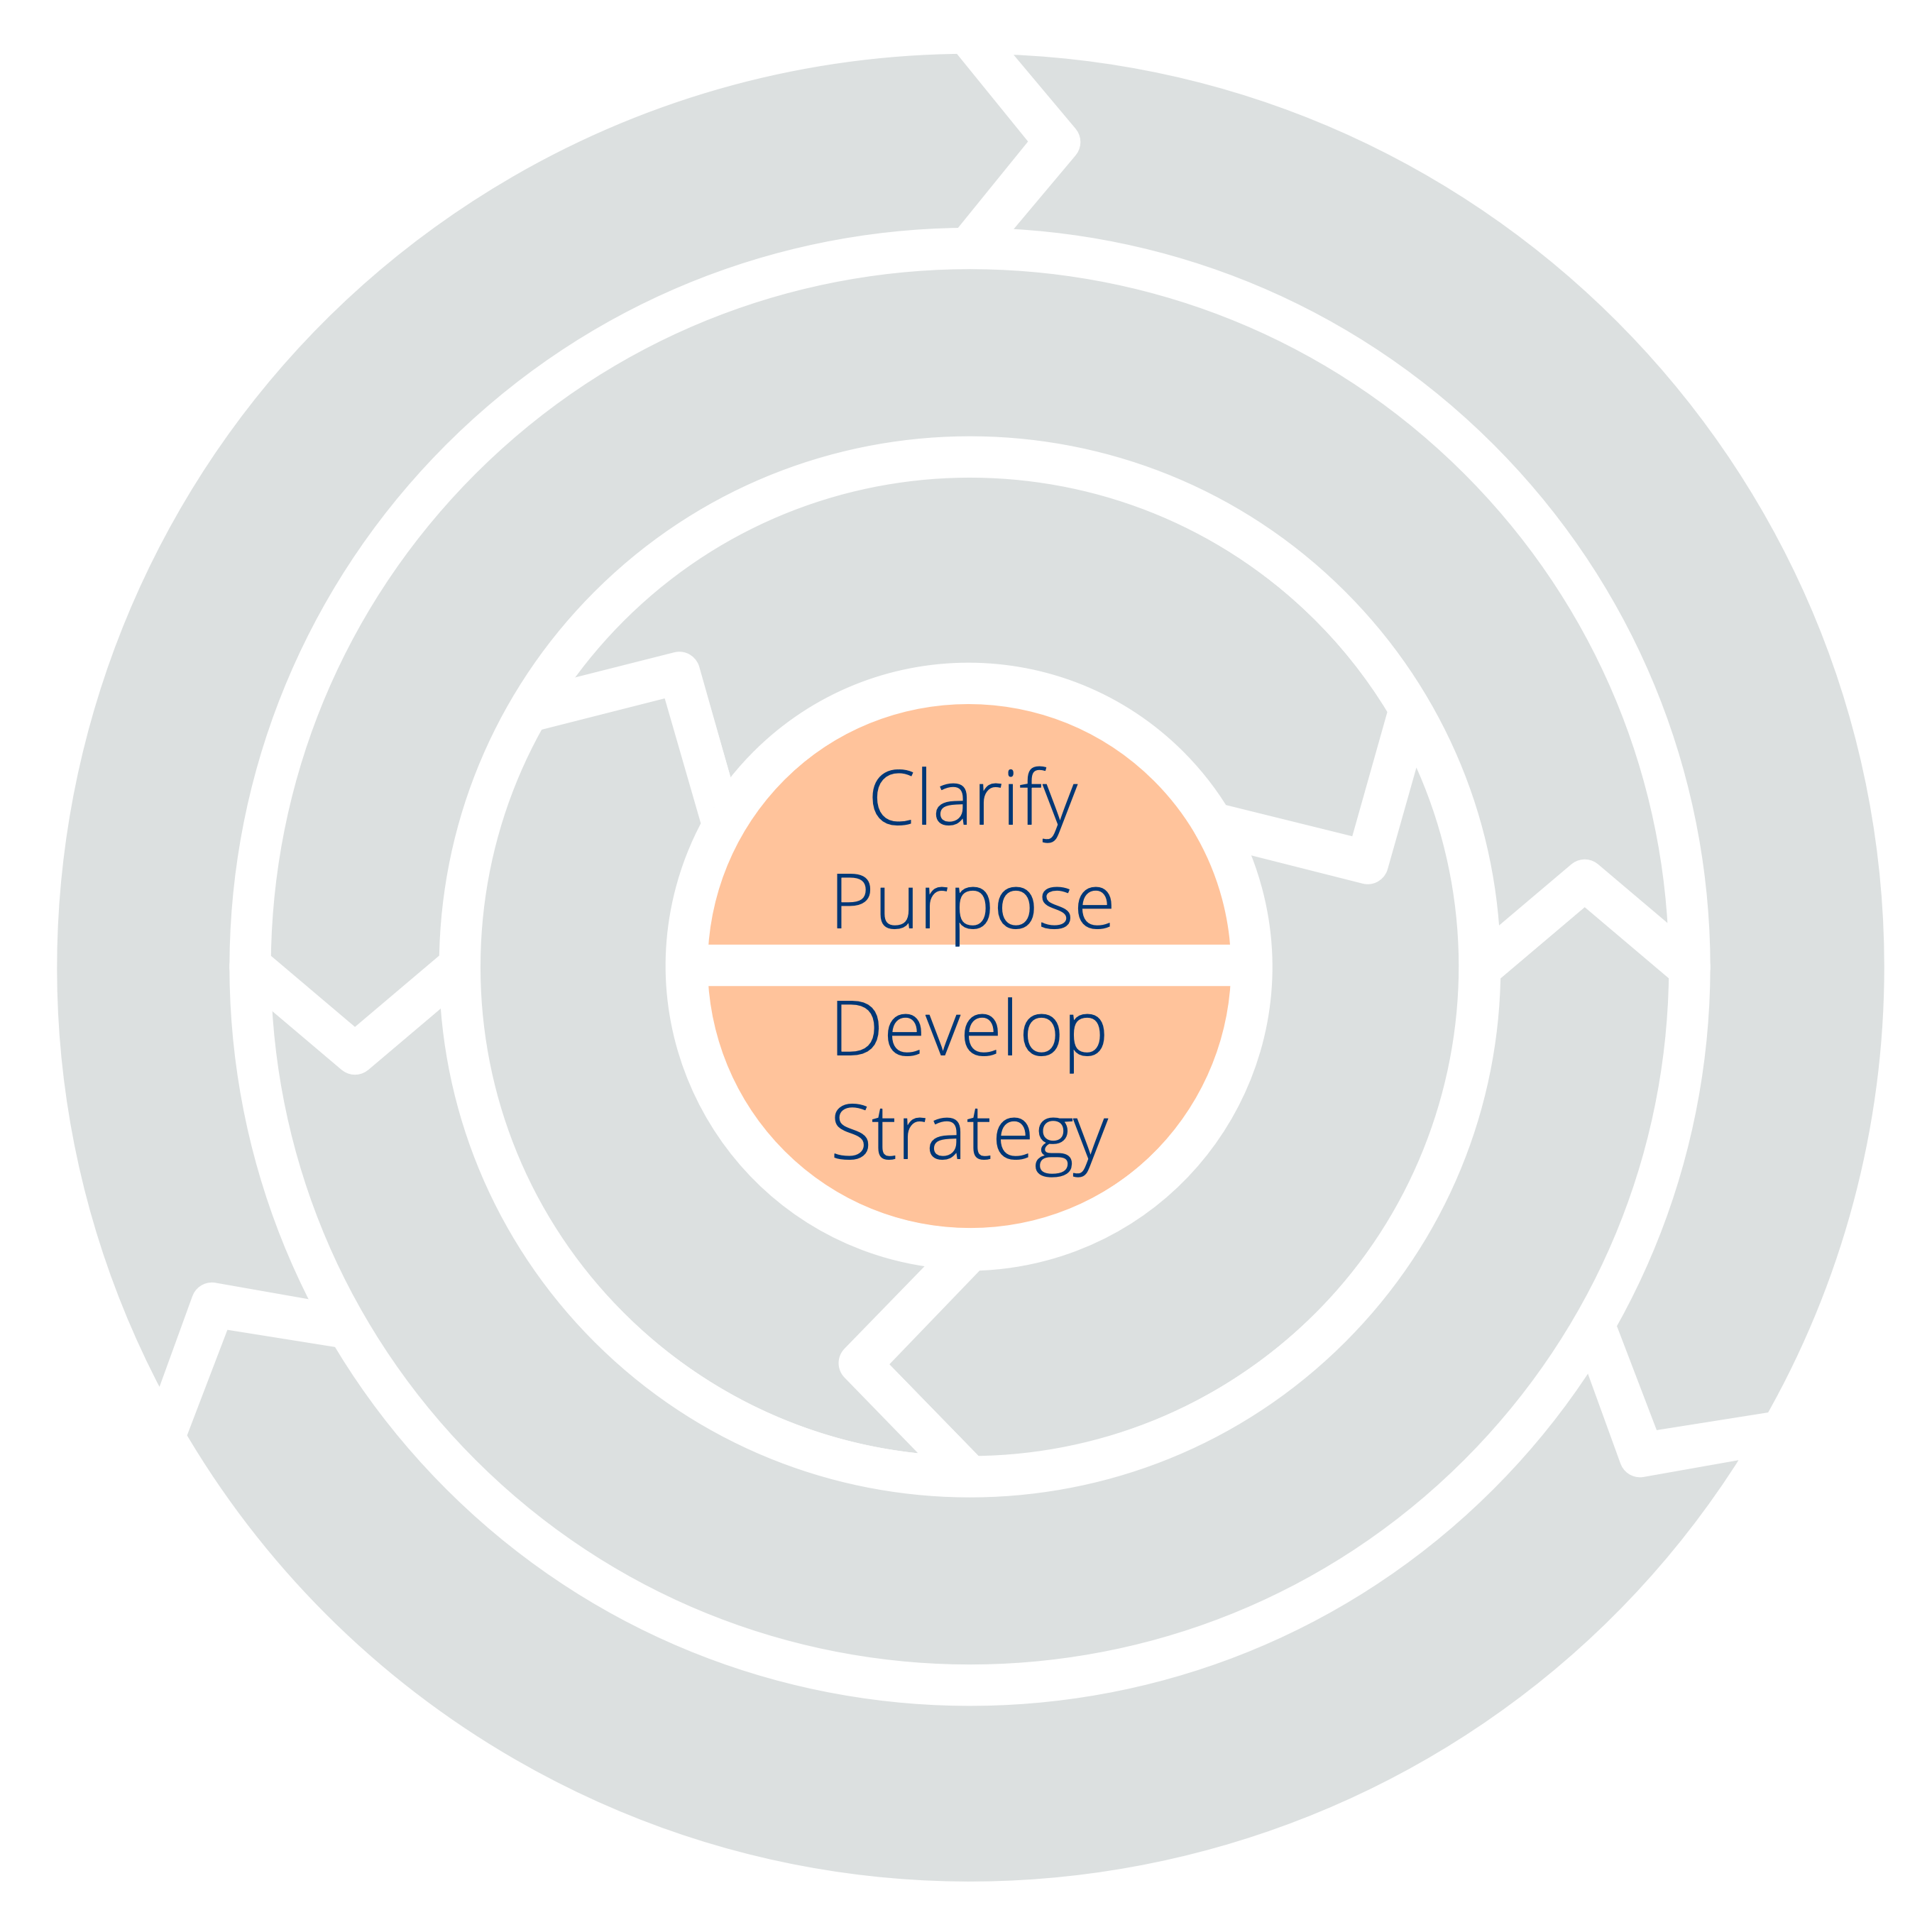 Deux principes pour s'orienter : clarifier la raison d'être - développer la stratégie